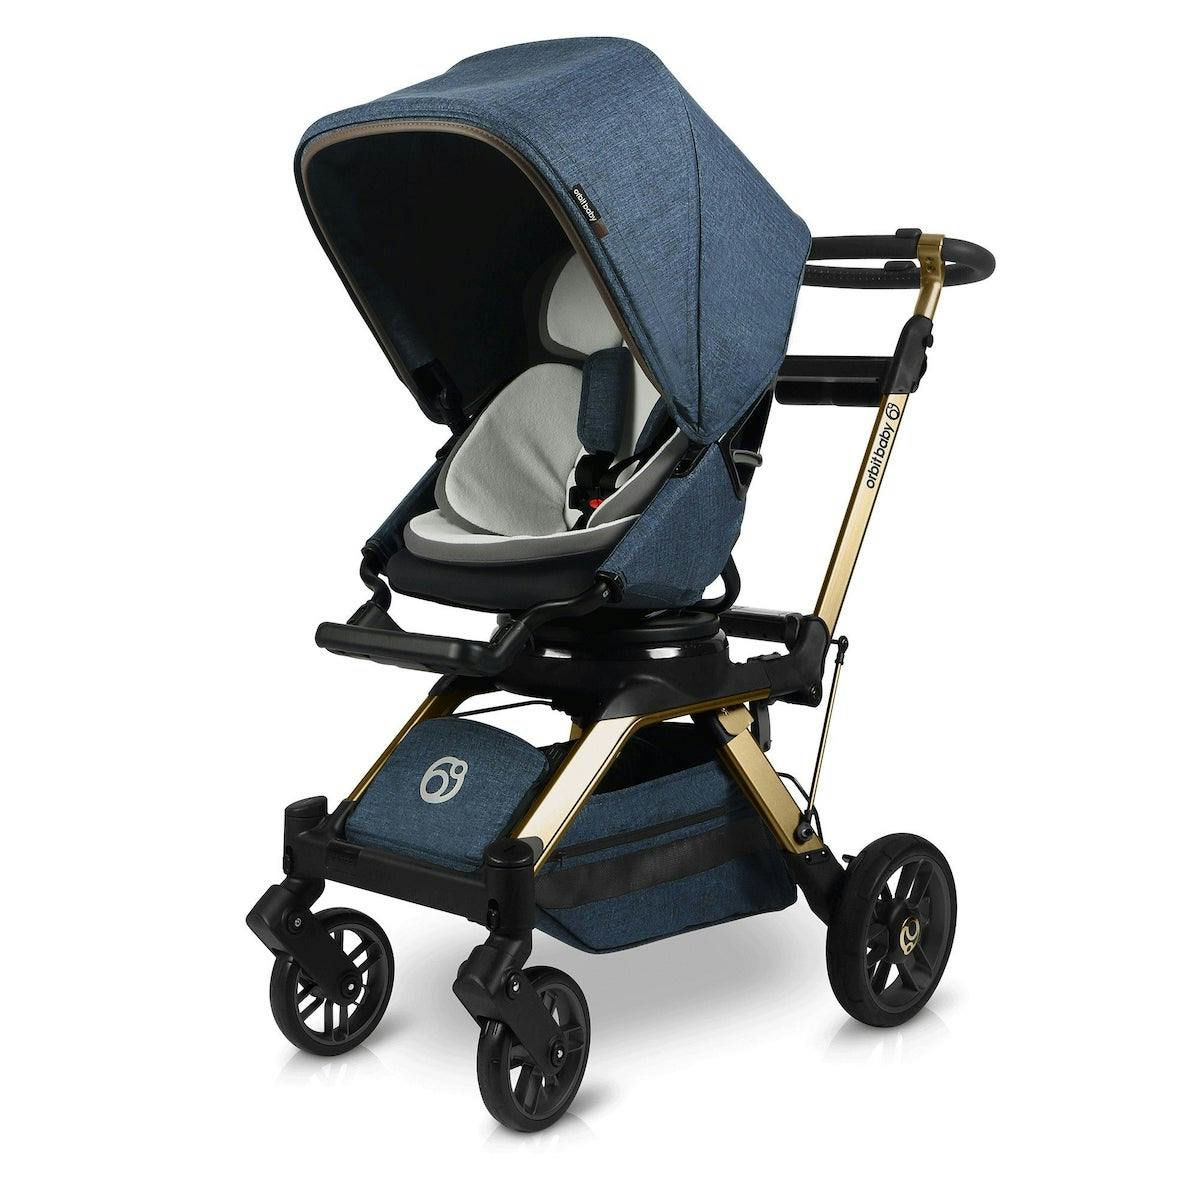 Orbit Baby G5 Stroller · Gold / Melange Navy